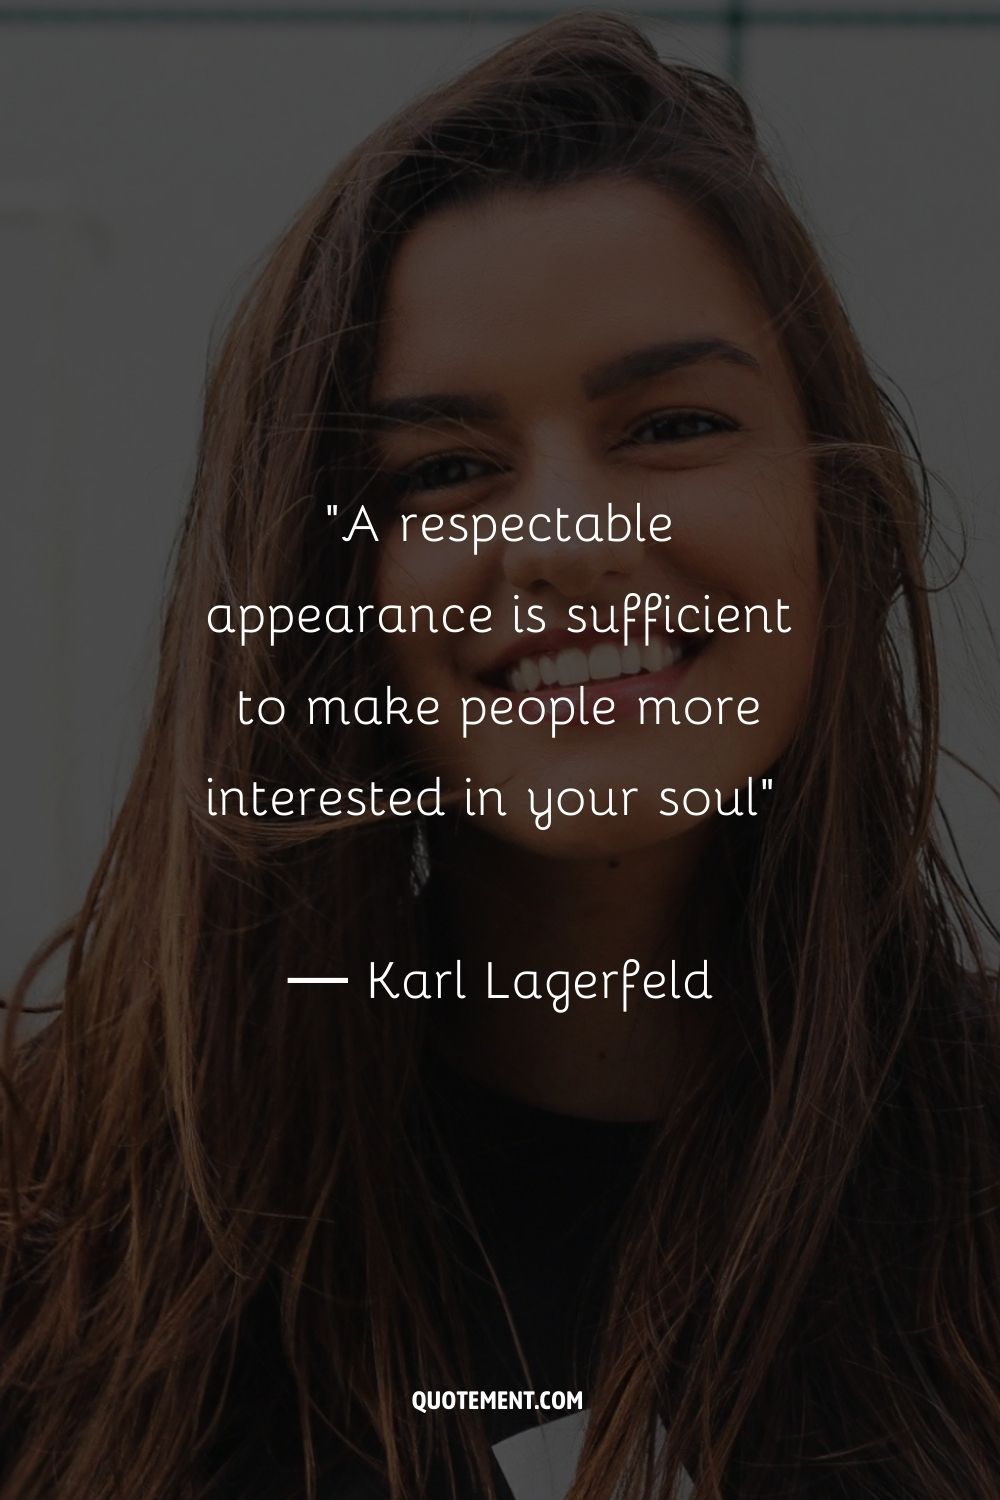 Una apariencia respetable es suficiente para que la gente se interese más por tu alma